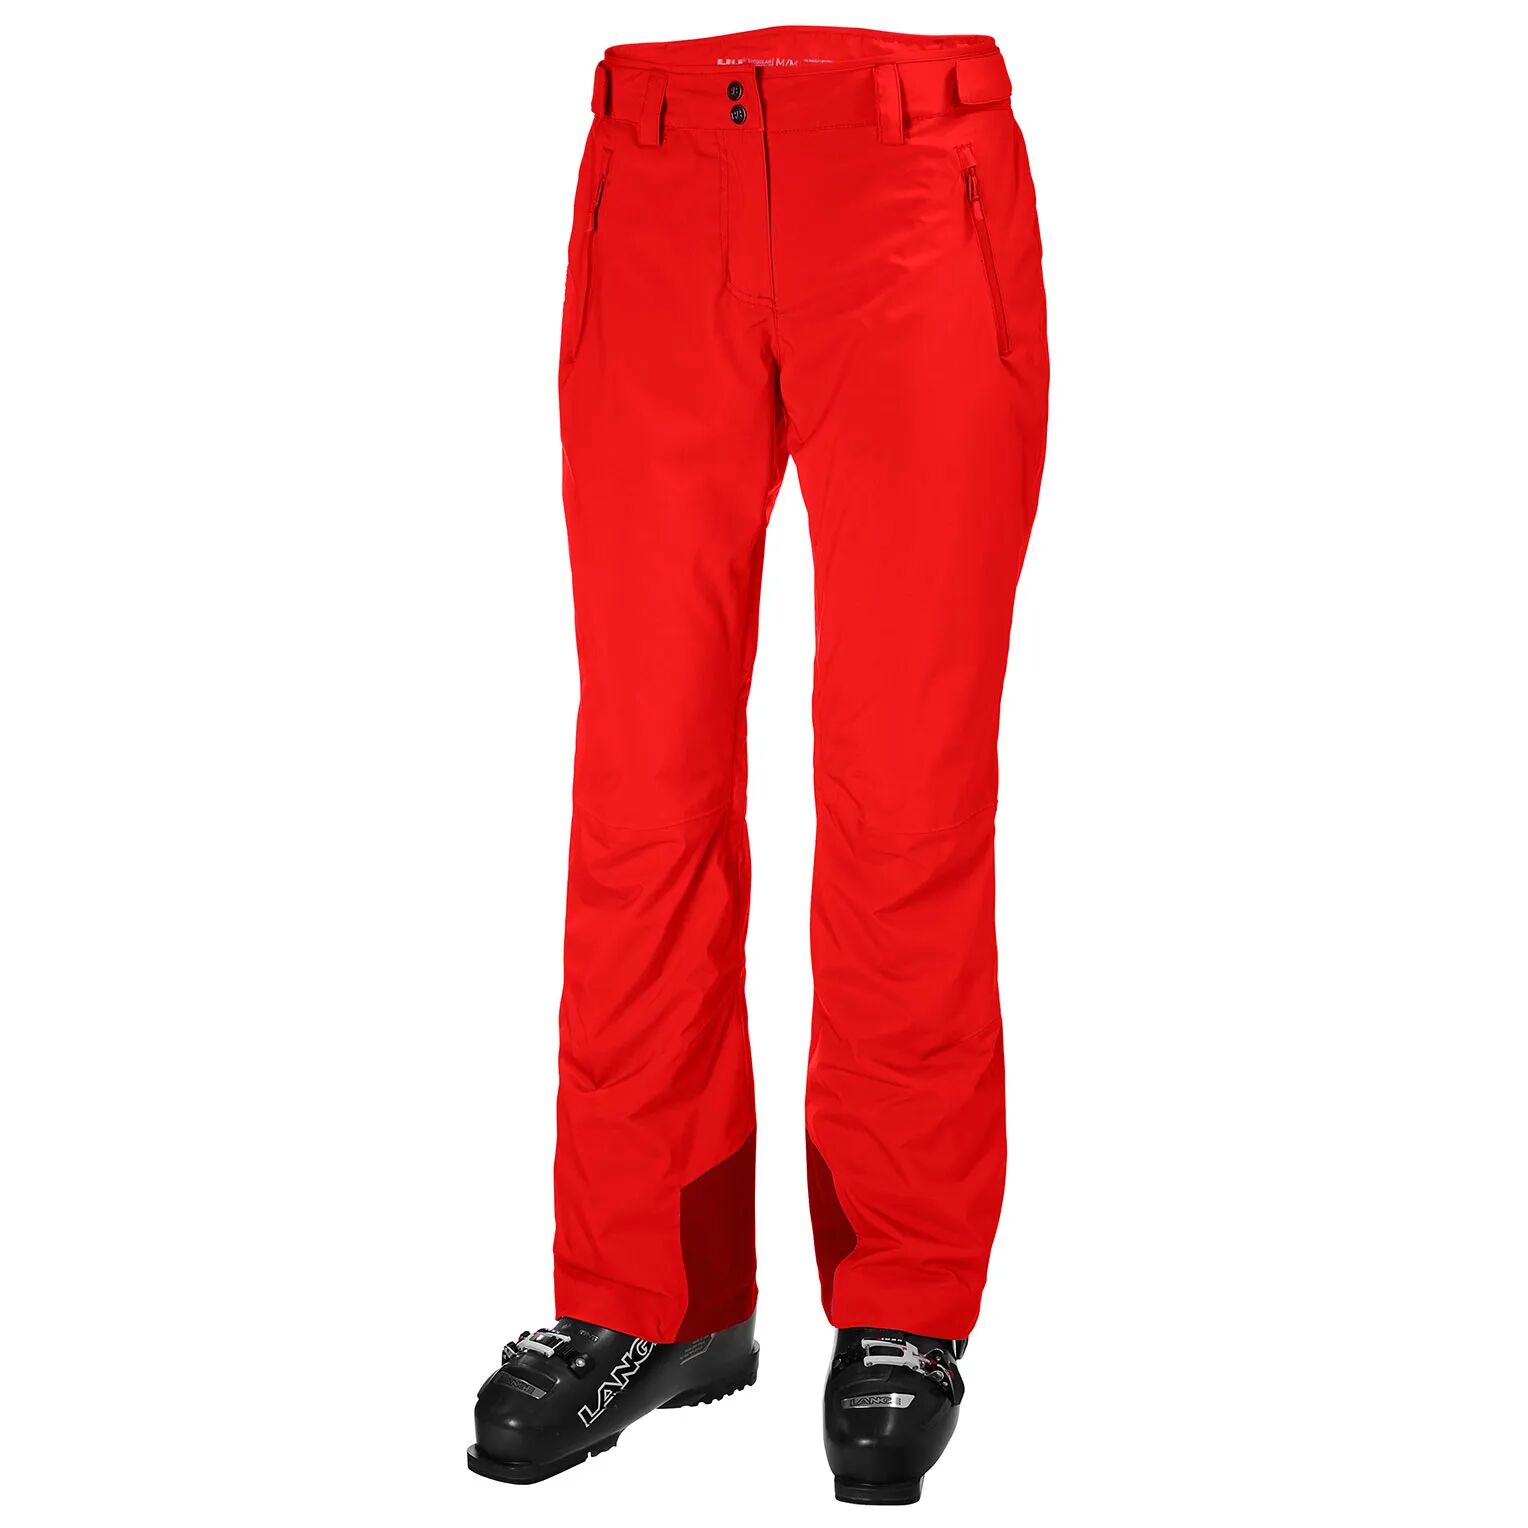 Helly Hansen mujeres pantalon de esqui rojo S